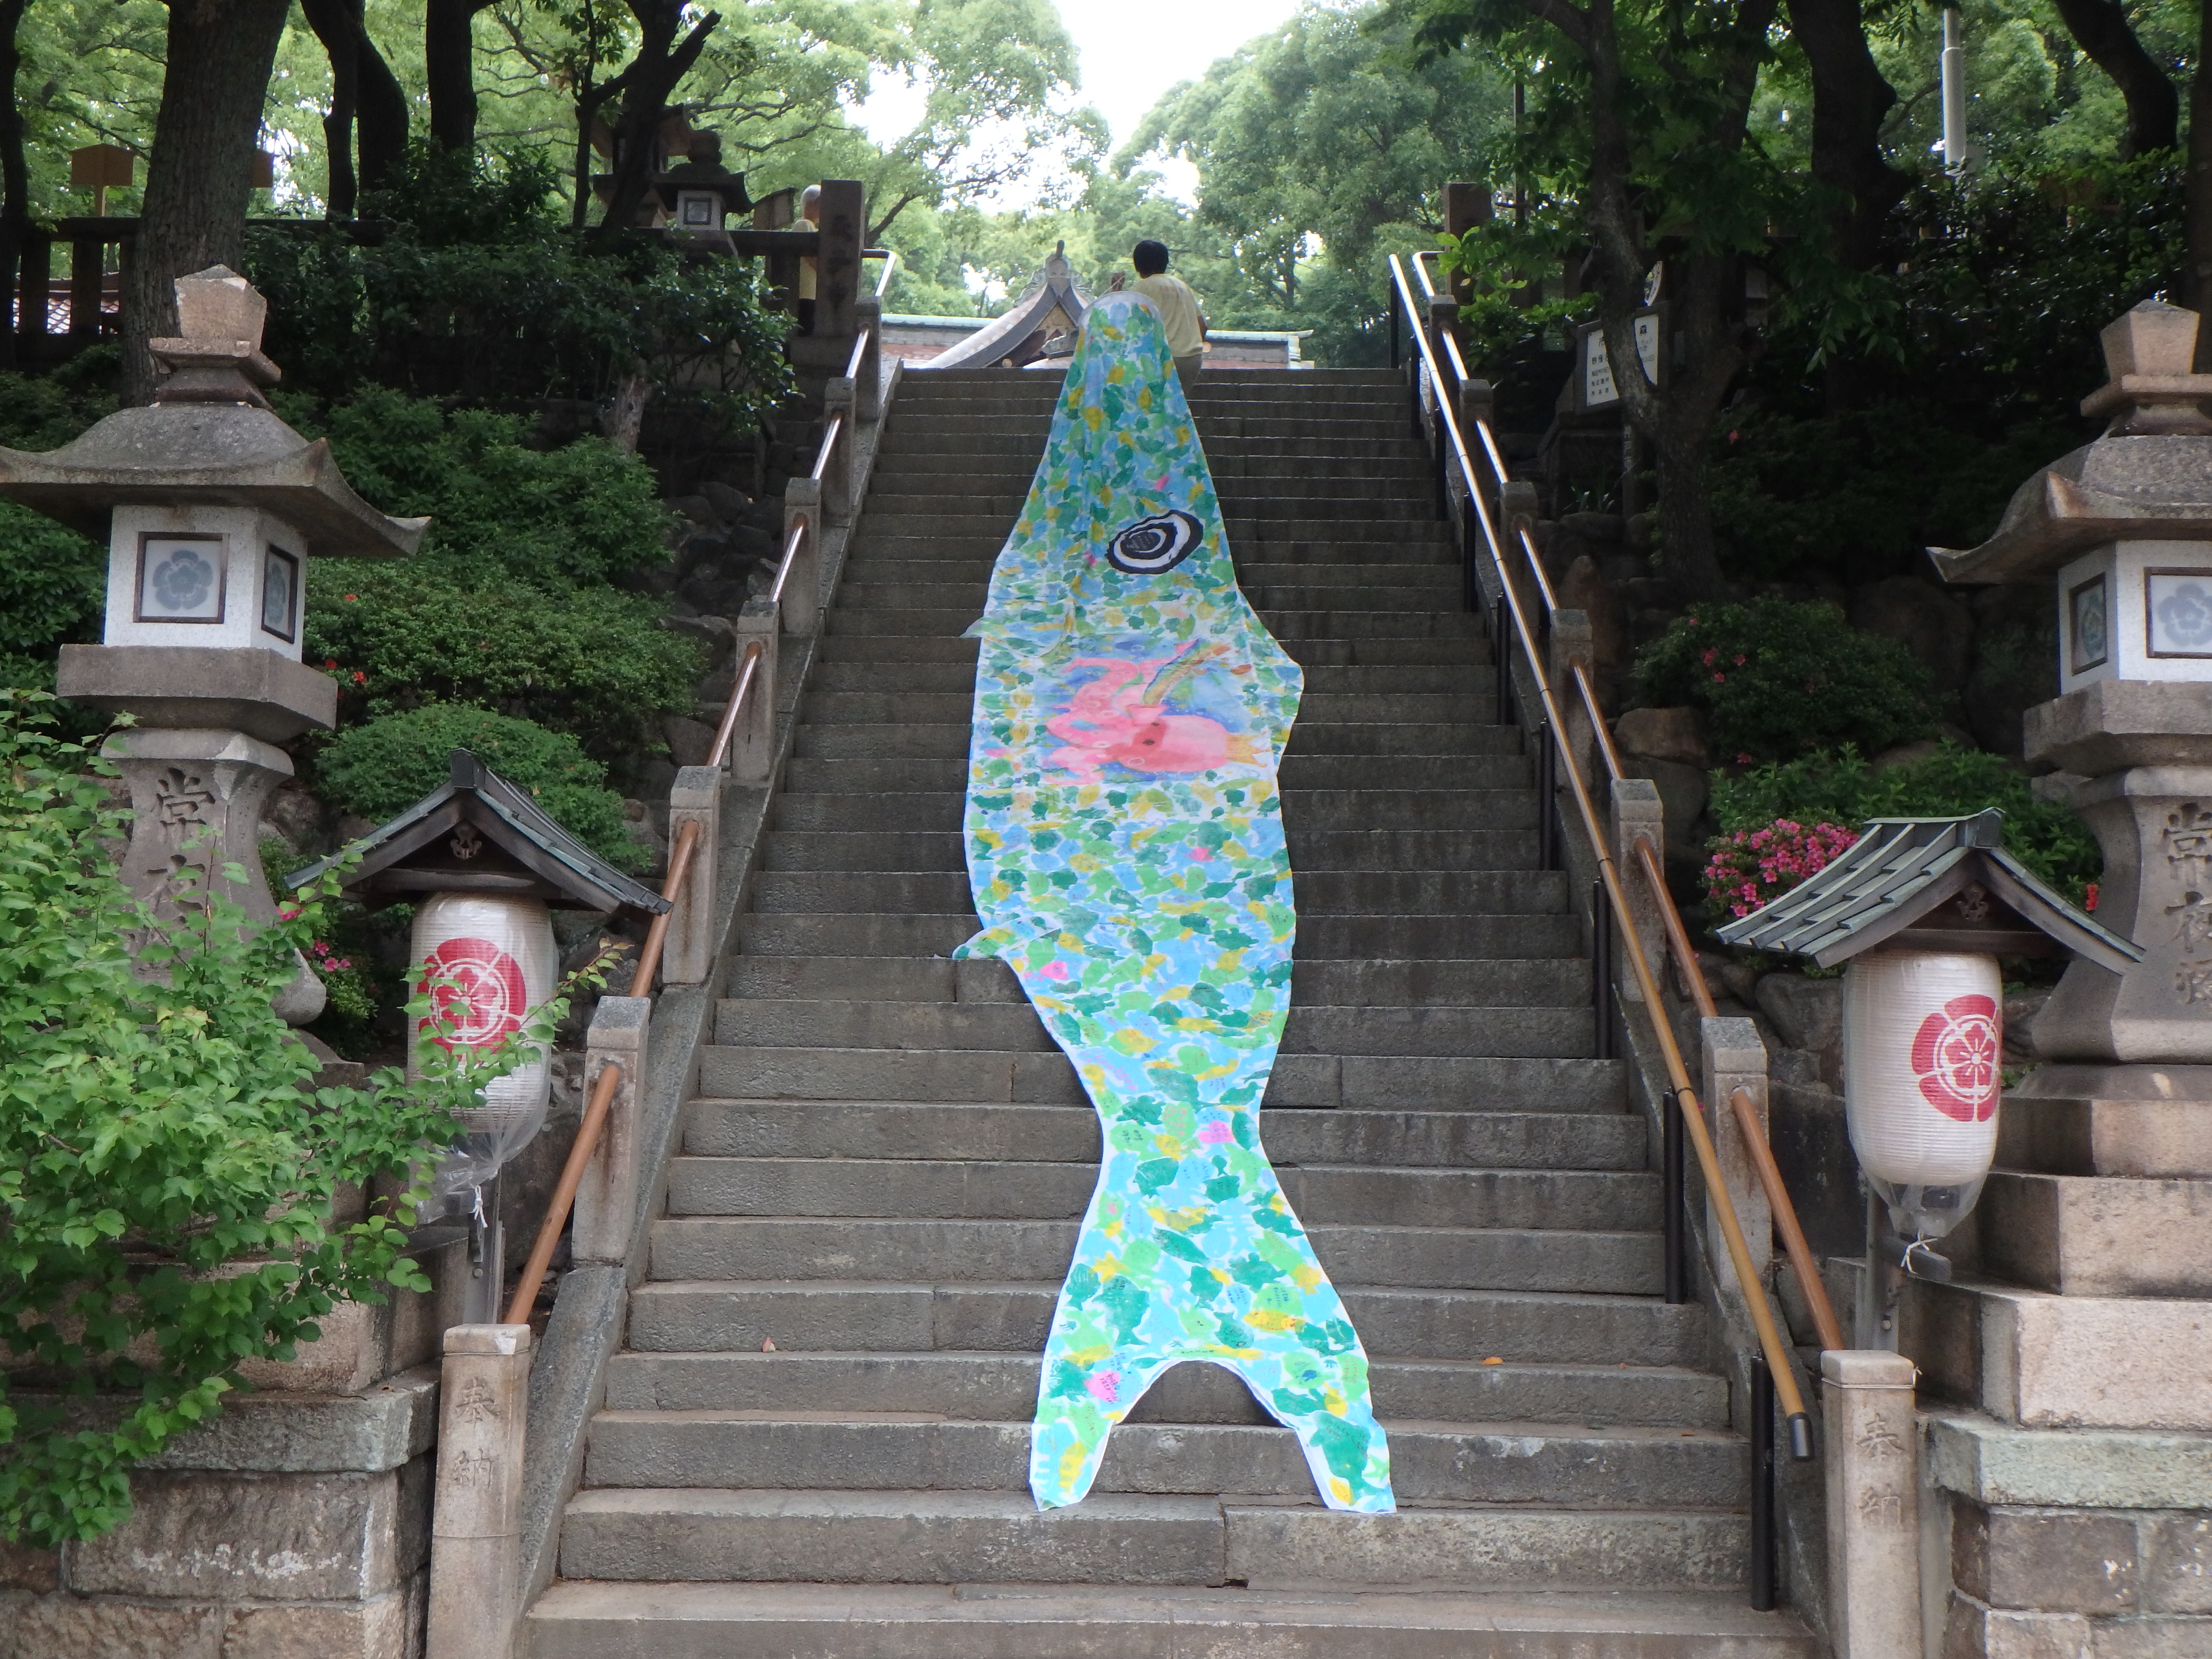 スイミープロジェクト 神戸から笑顔と希望を全国に届ける鯉のぼり制作掲揚イベント Blog Archive 大願成就イベント 敏馬神社